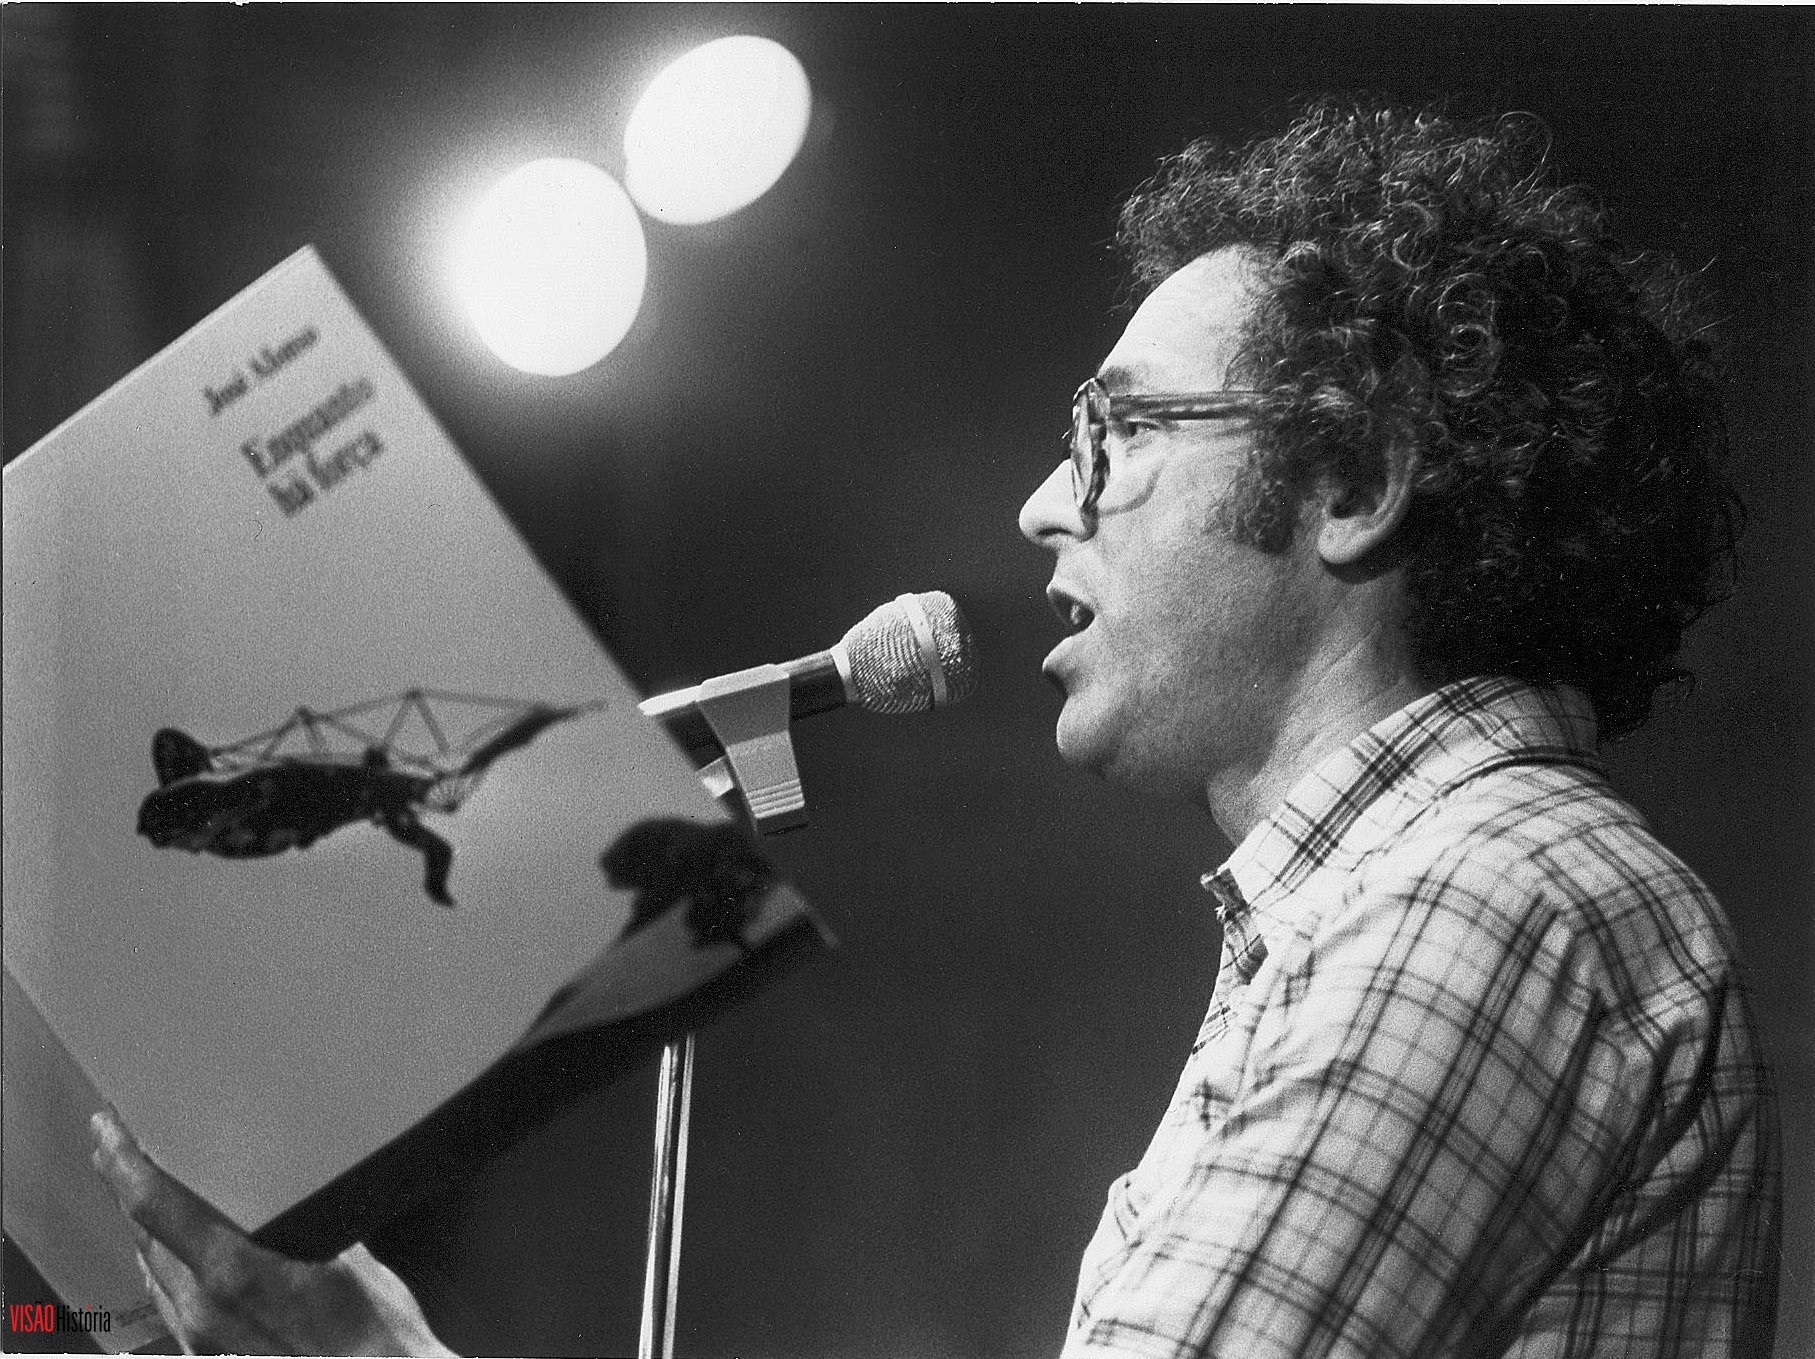 De Zeca Afonso a Adriano Correia de Oliveira. O papel da música de intervenção na revolução de 1974